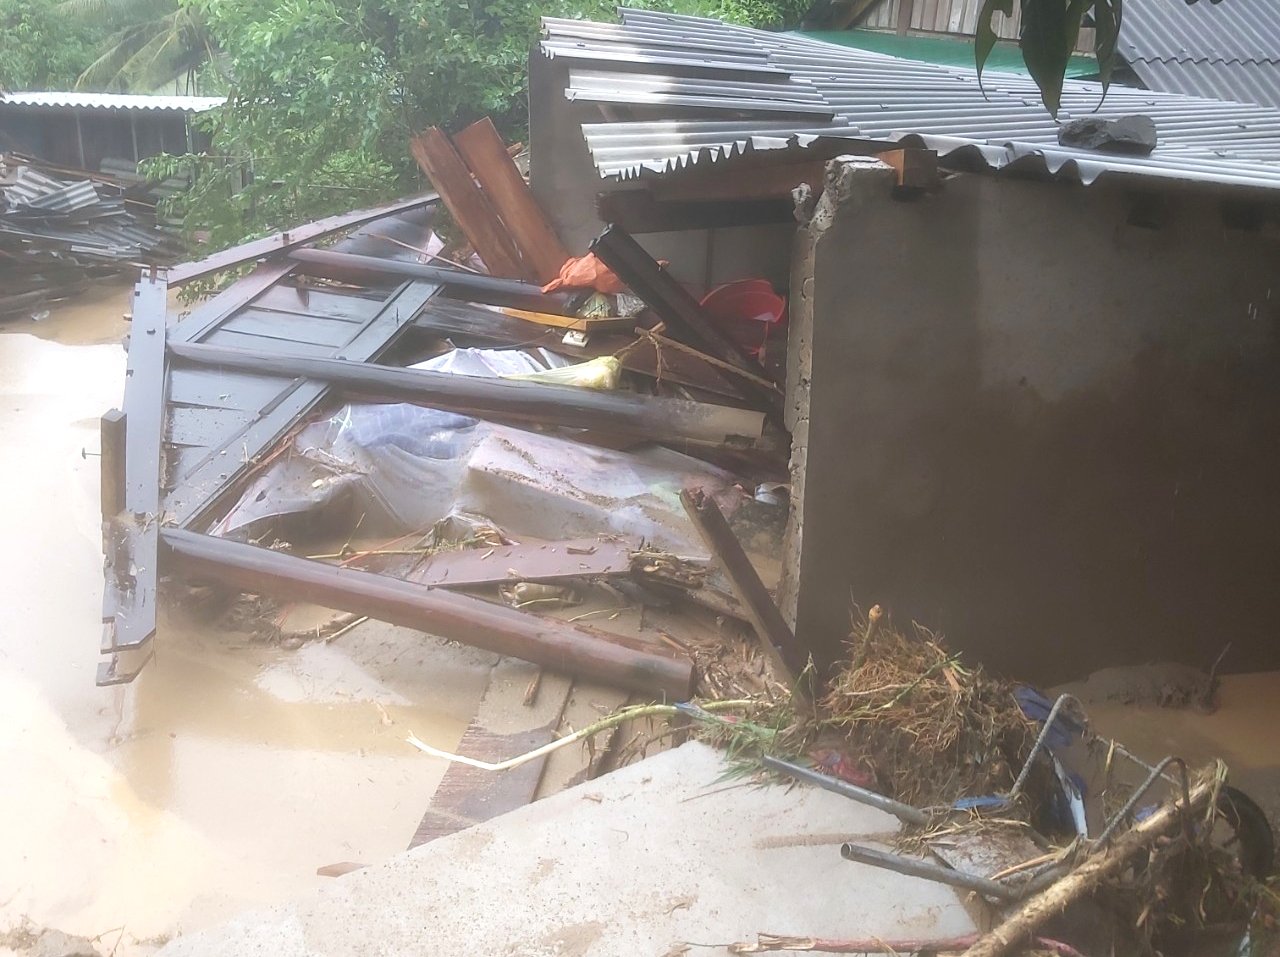 Theo Phó chủ tịch UBND huyện Kỳ Sơn, qua thống kê sơ bộ, có một cháu bé 4 tháng tuổi bị lũ cuốn trôi. 15 nhà dân, 2 xe ô tô cũng bị cuốn theo dòng nước đục.